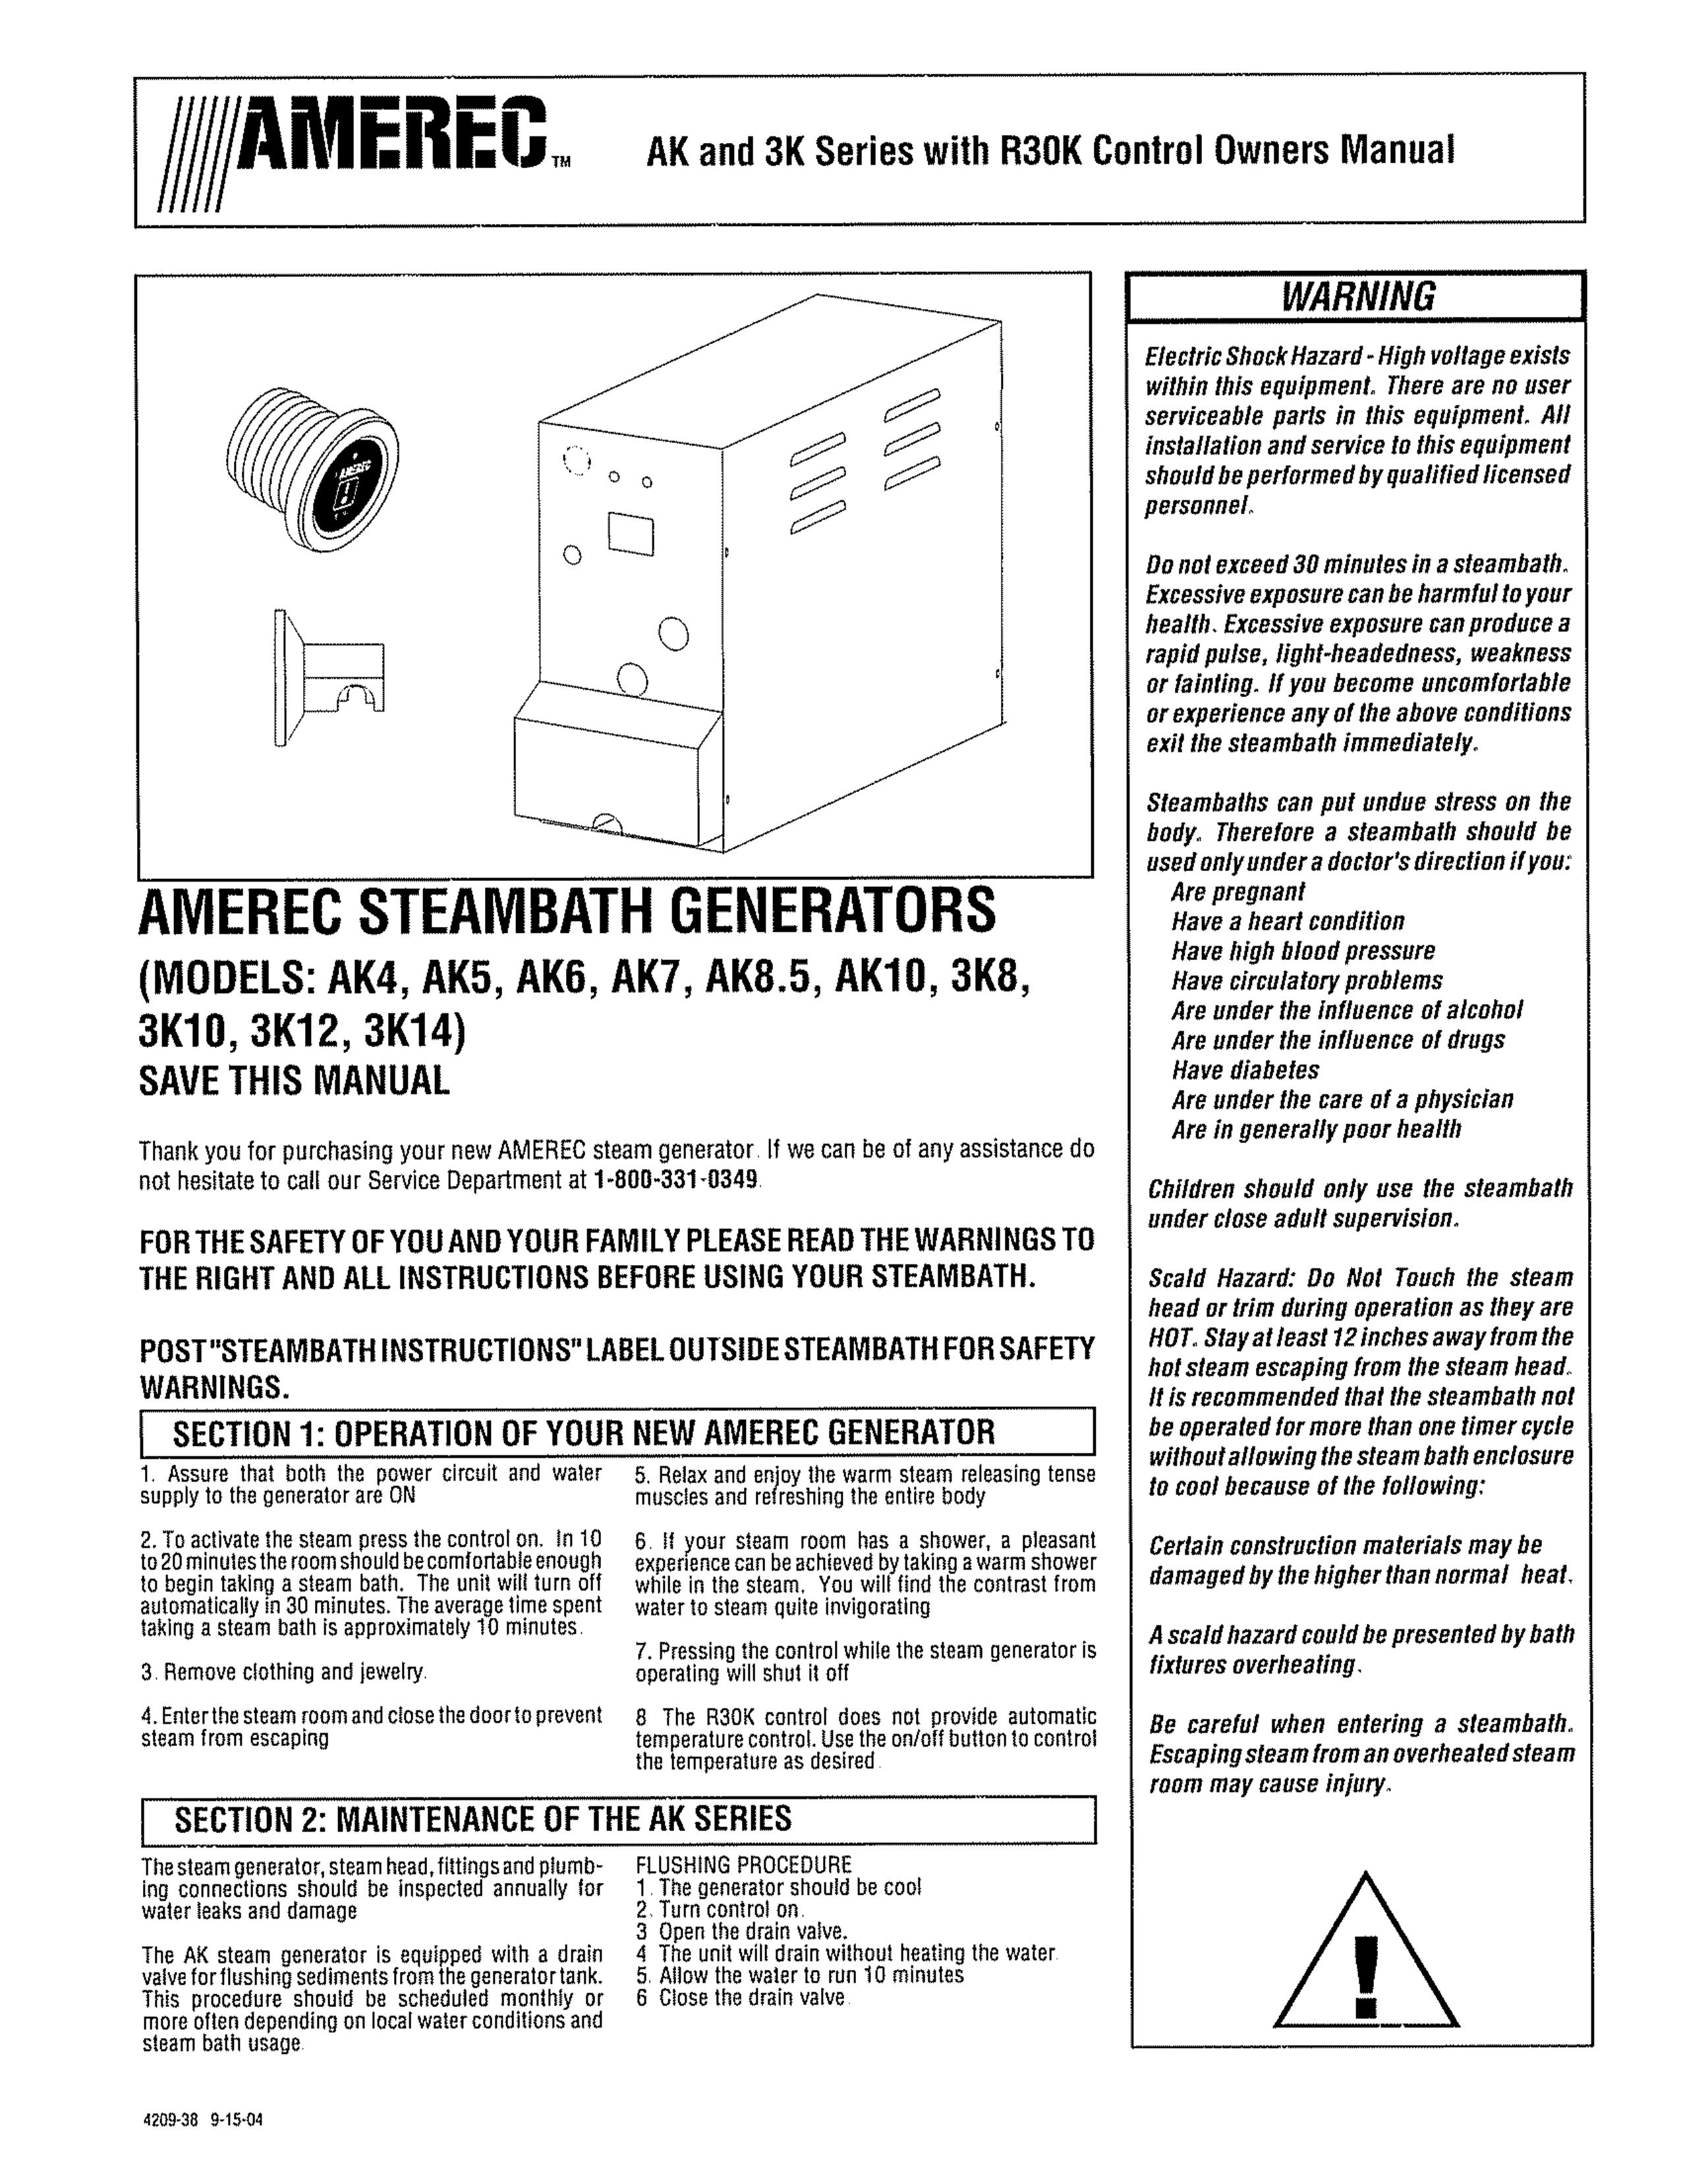 Amerec 3K14 Portable Generator User Manual